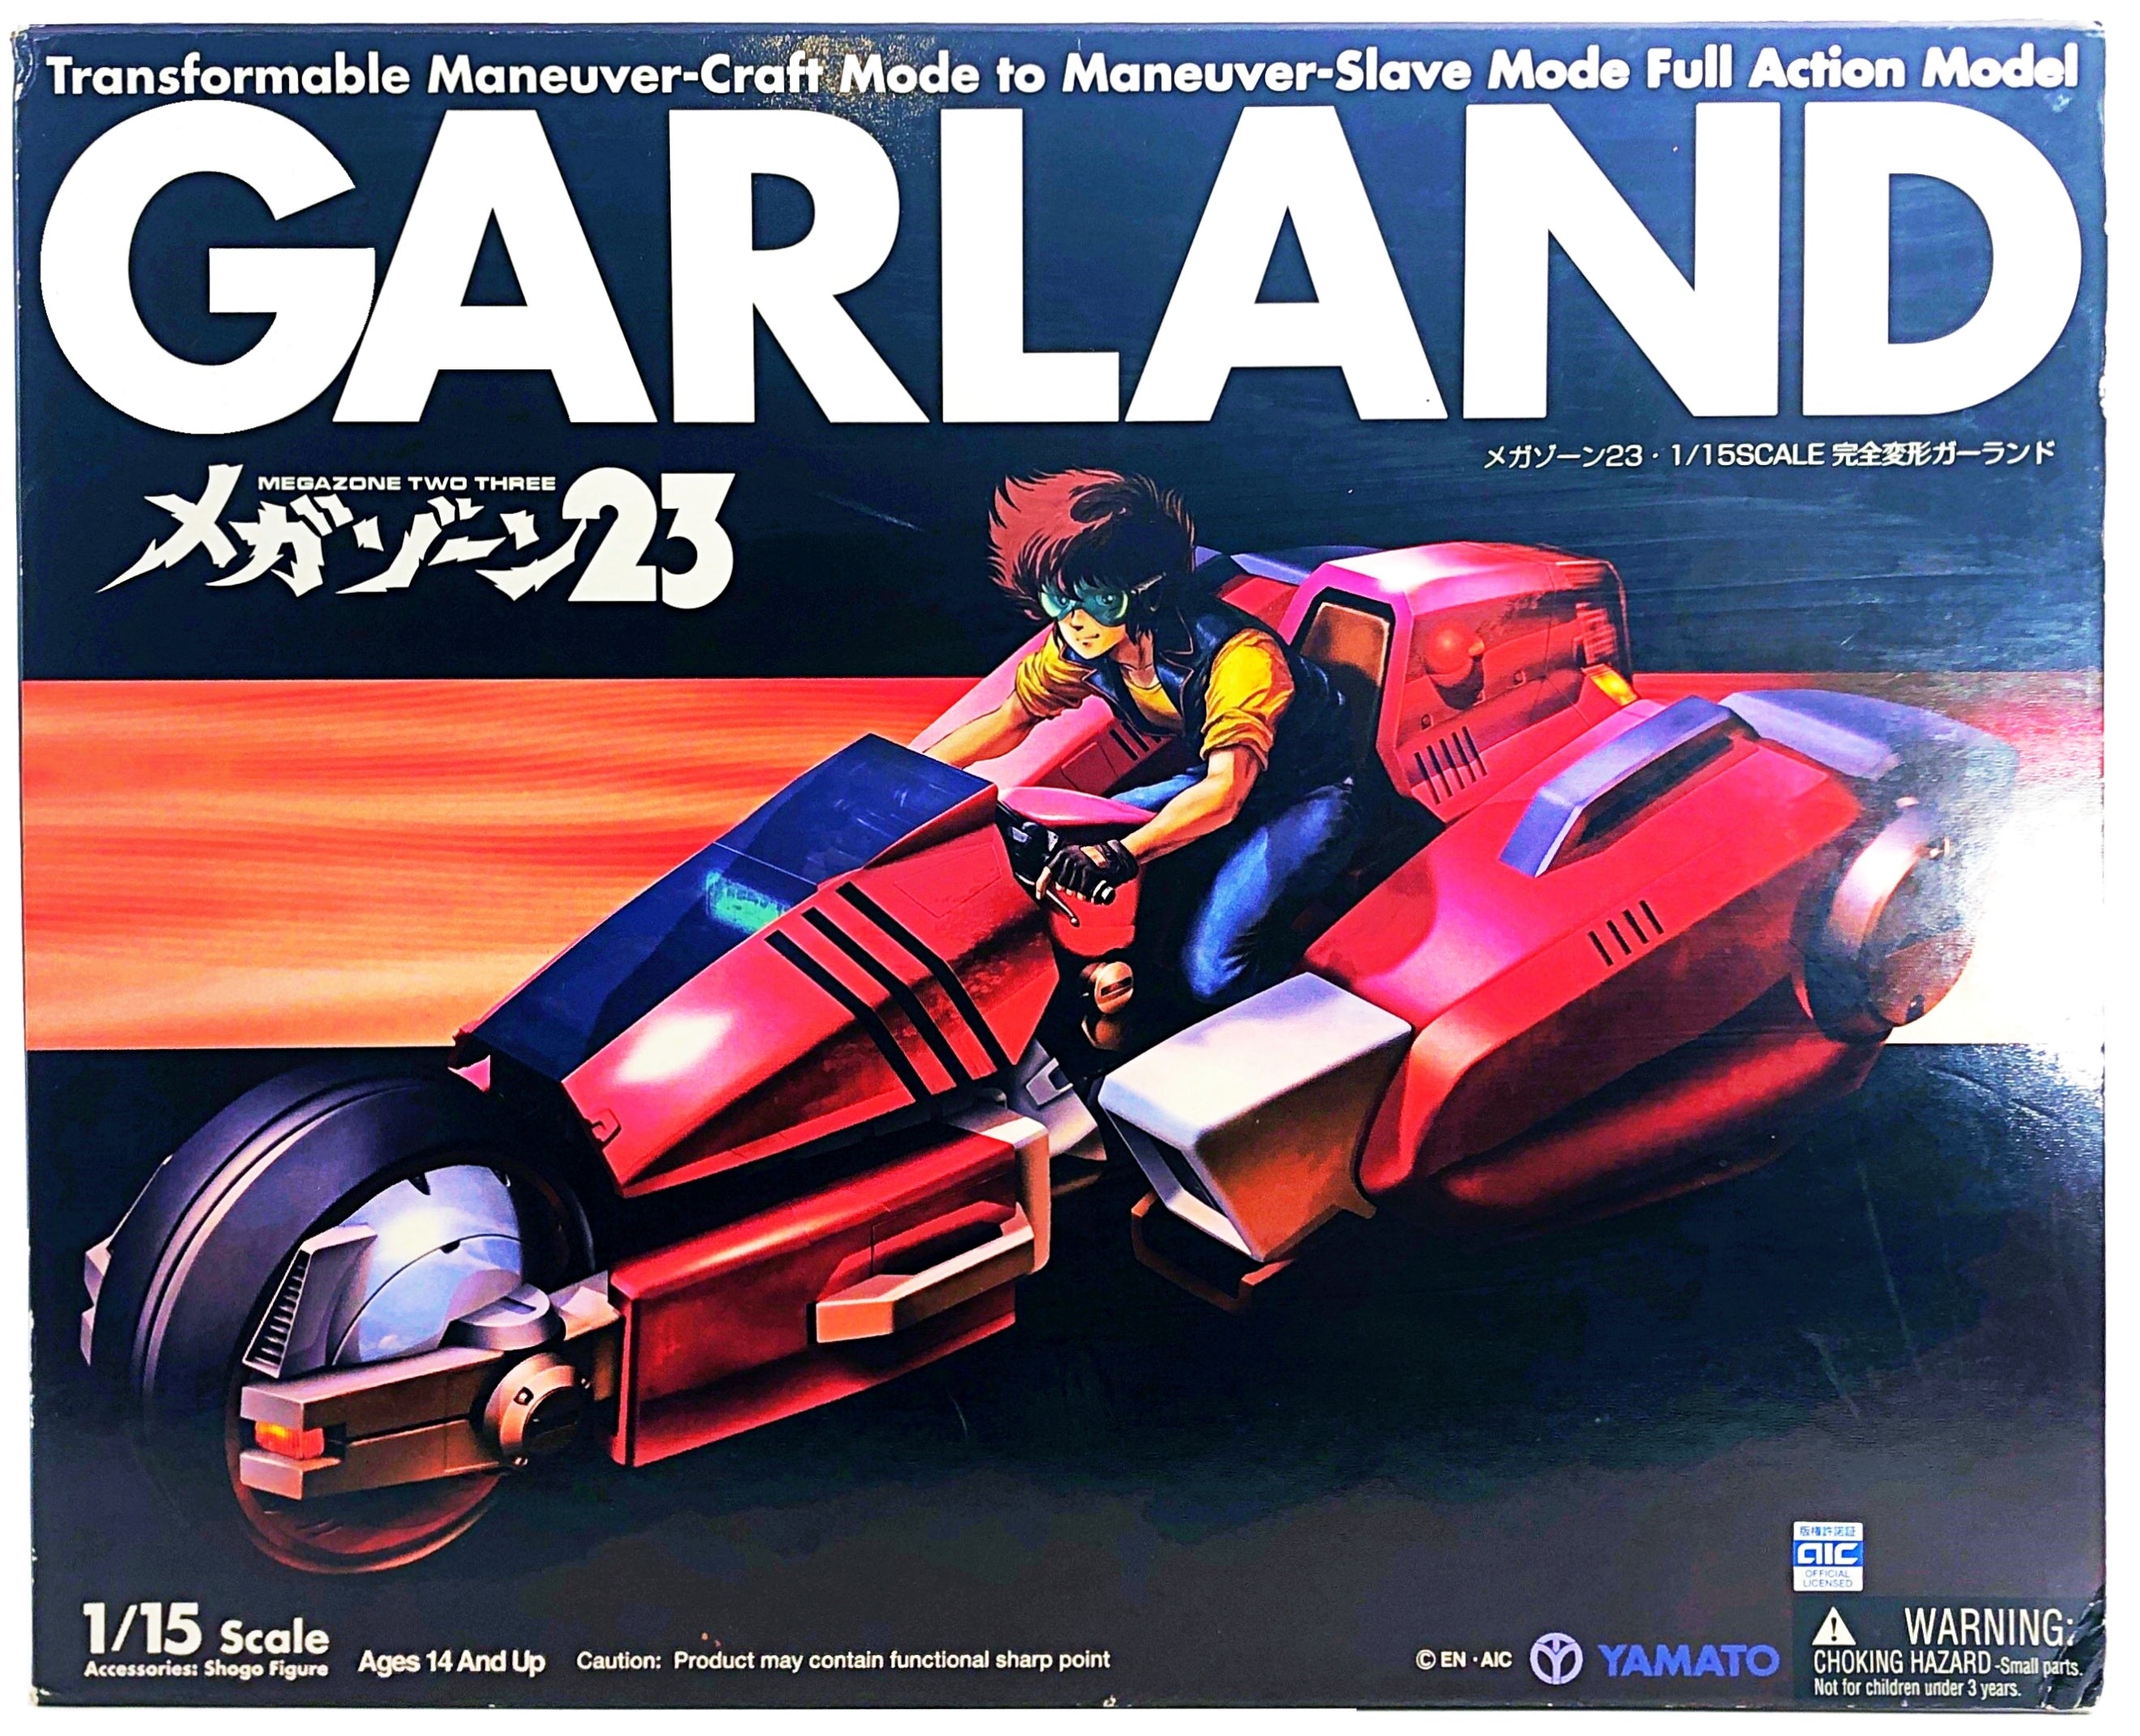 Megazone 23 Garland 1/15 Scale (Yamato, 2006)